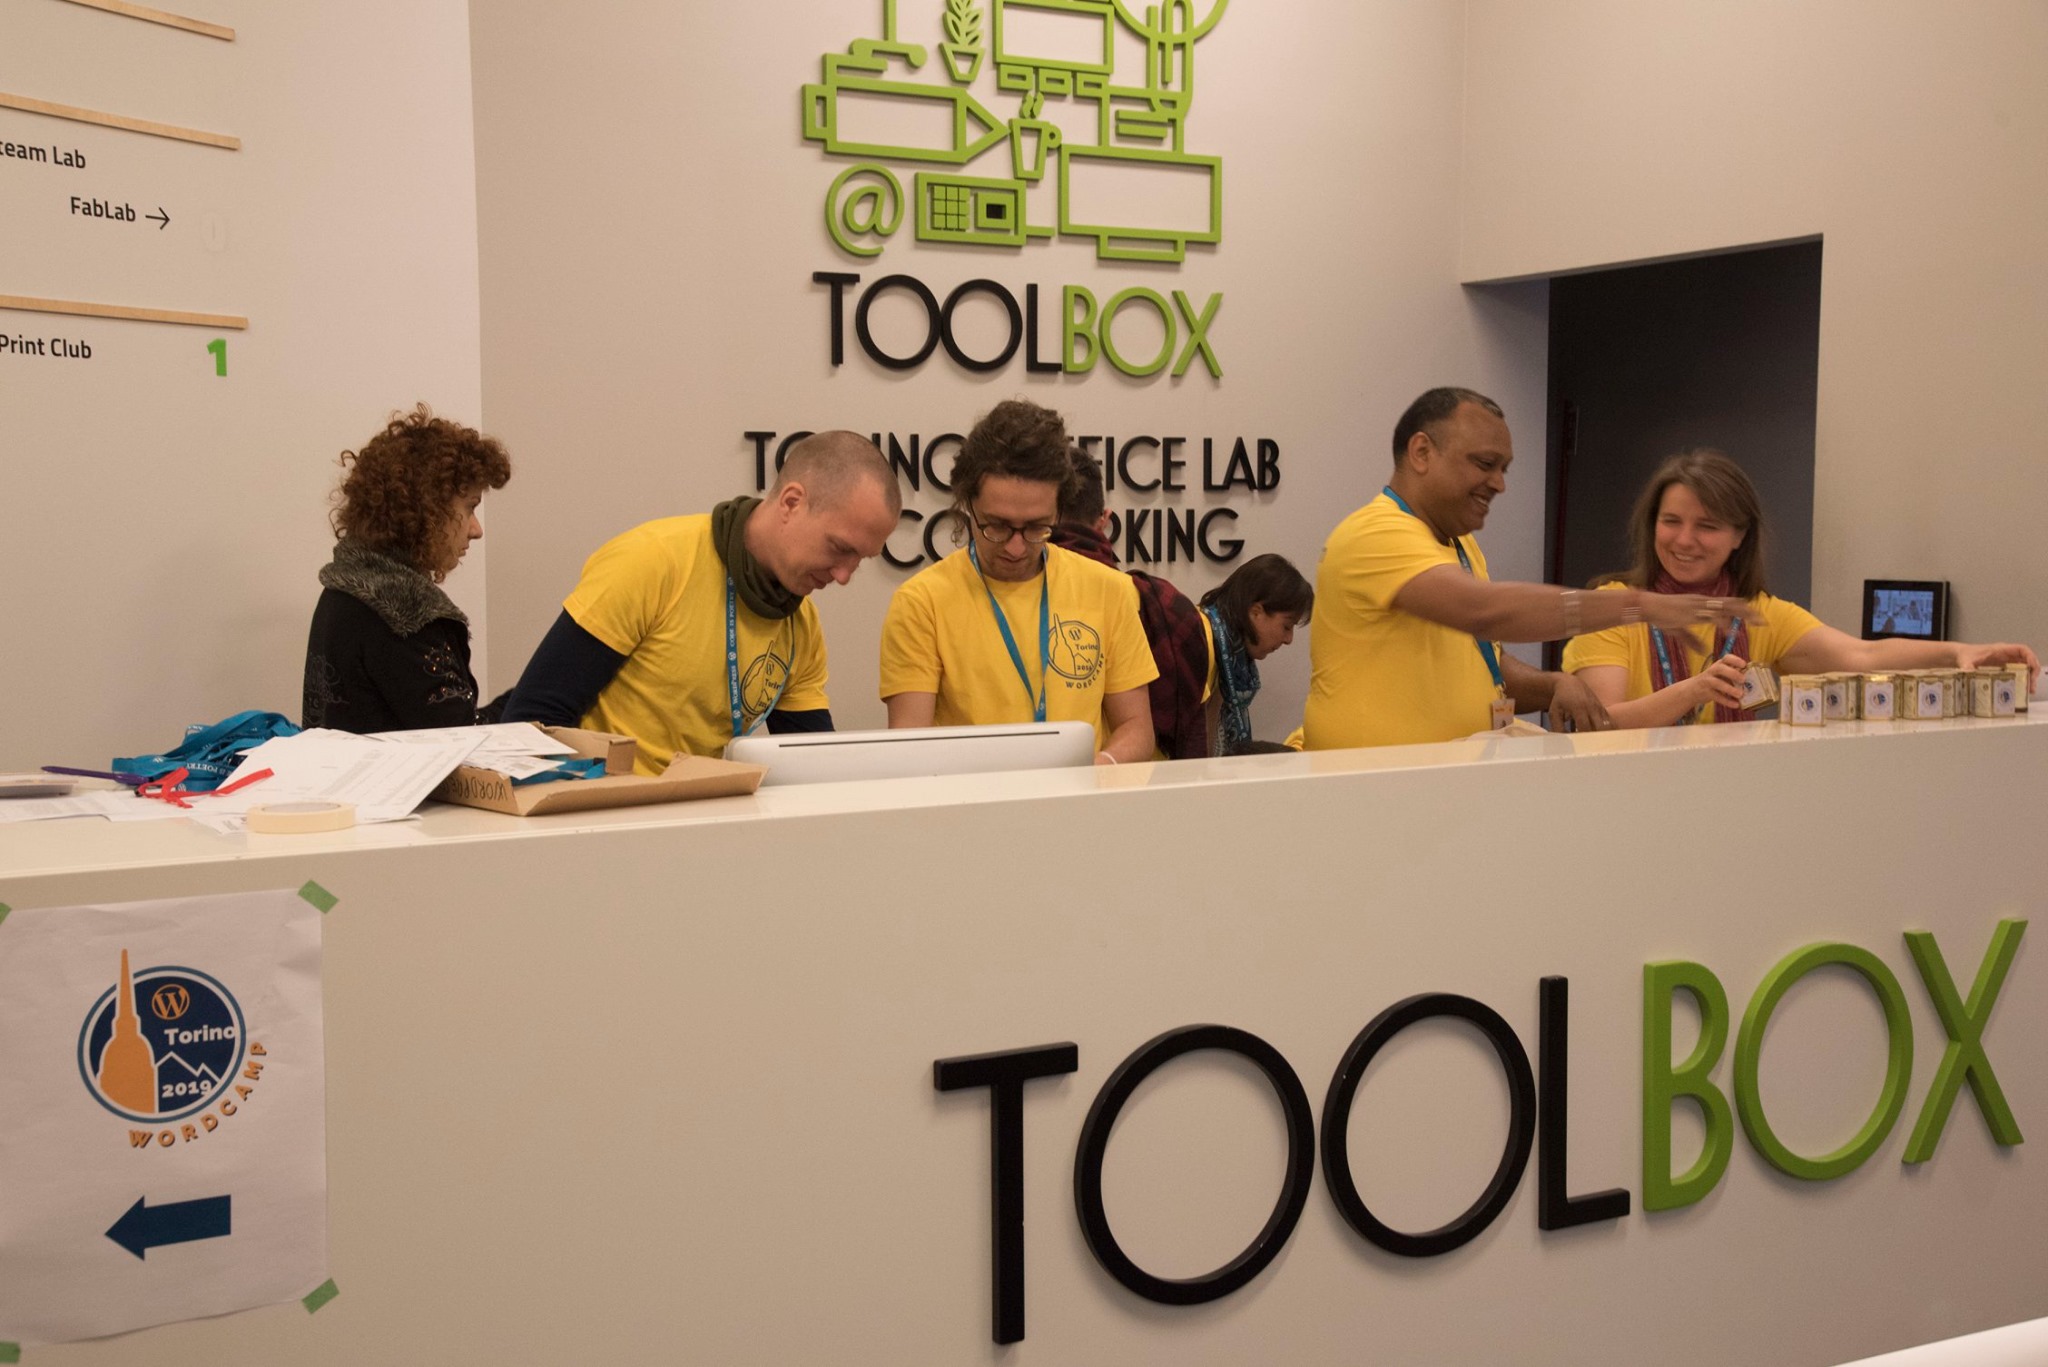 Call for Volunteers: immagine di volontari a lavoro a WordCamp Torino 2019